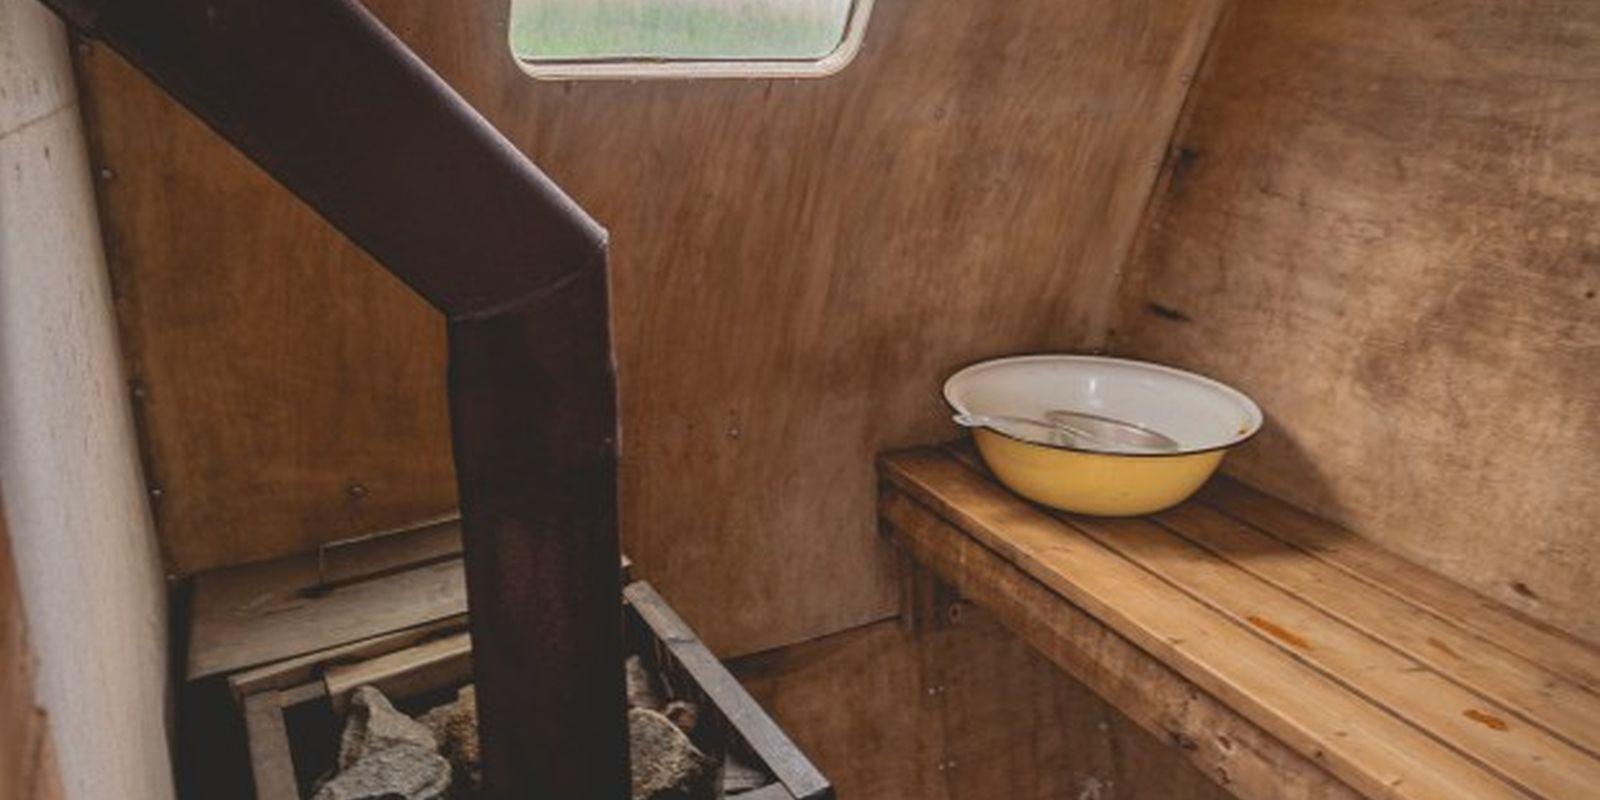 Erlebnisübernachtung im Saunaboot auf dem Peipussee –die Sauna der MesiSpa